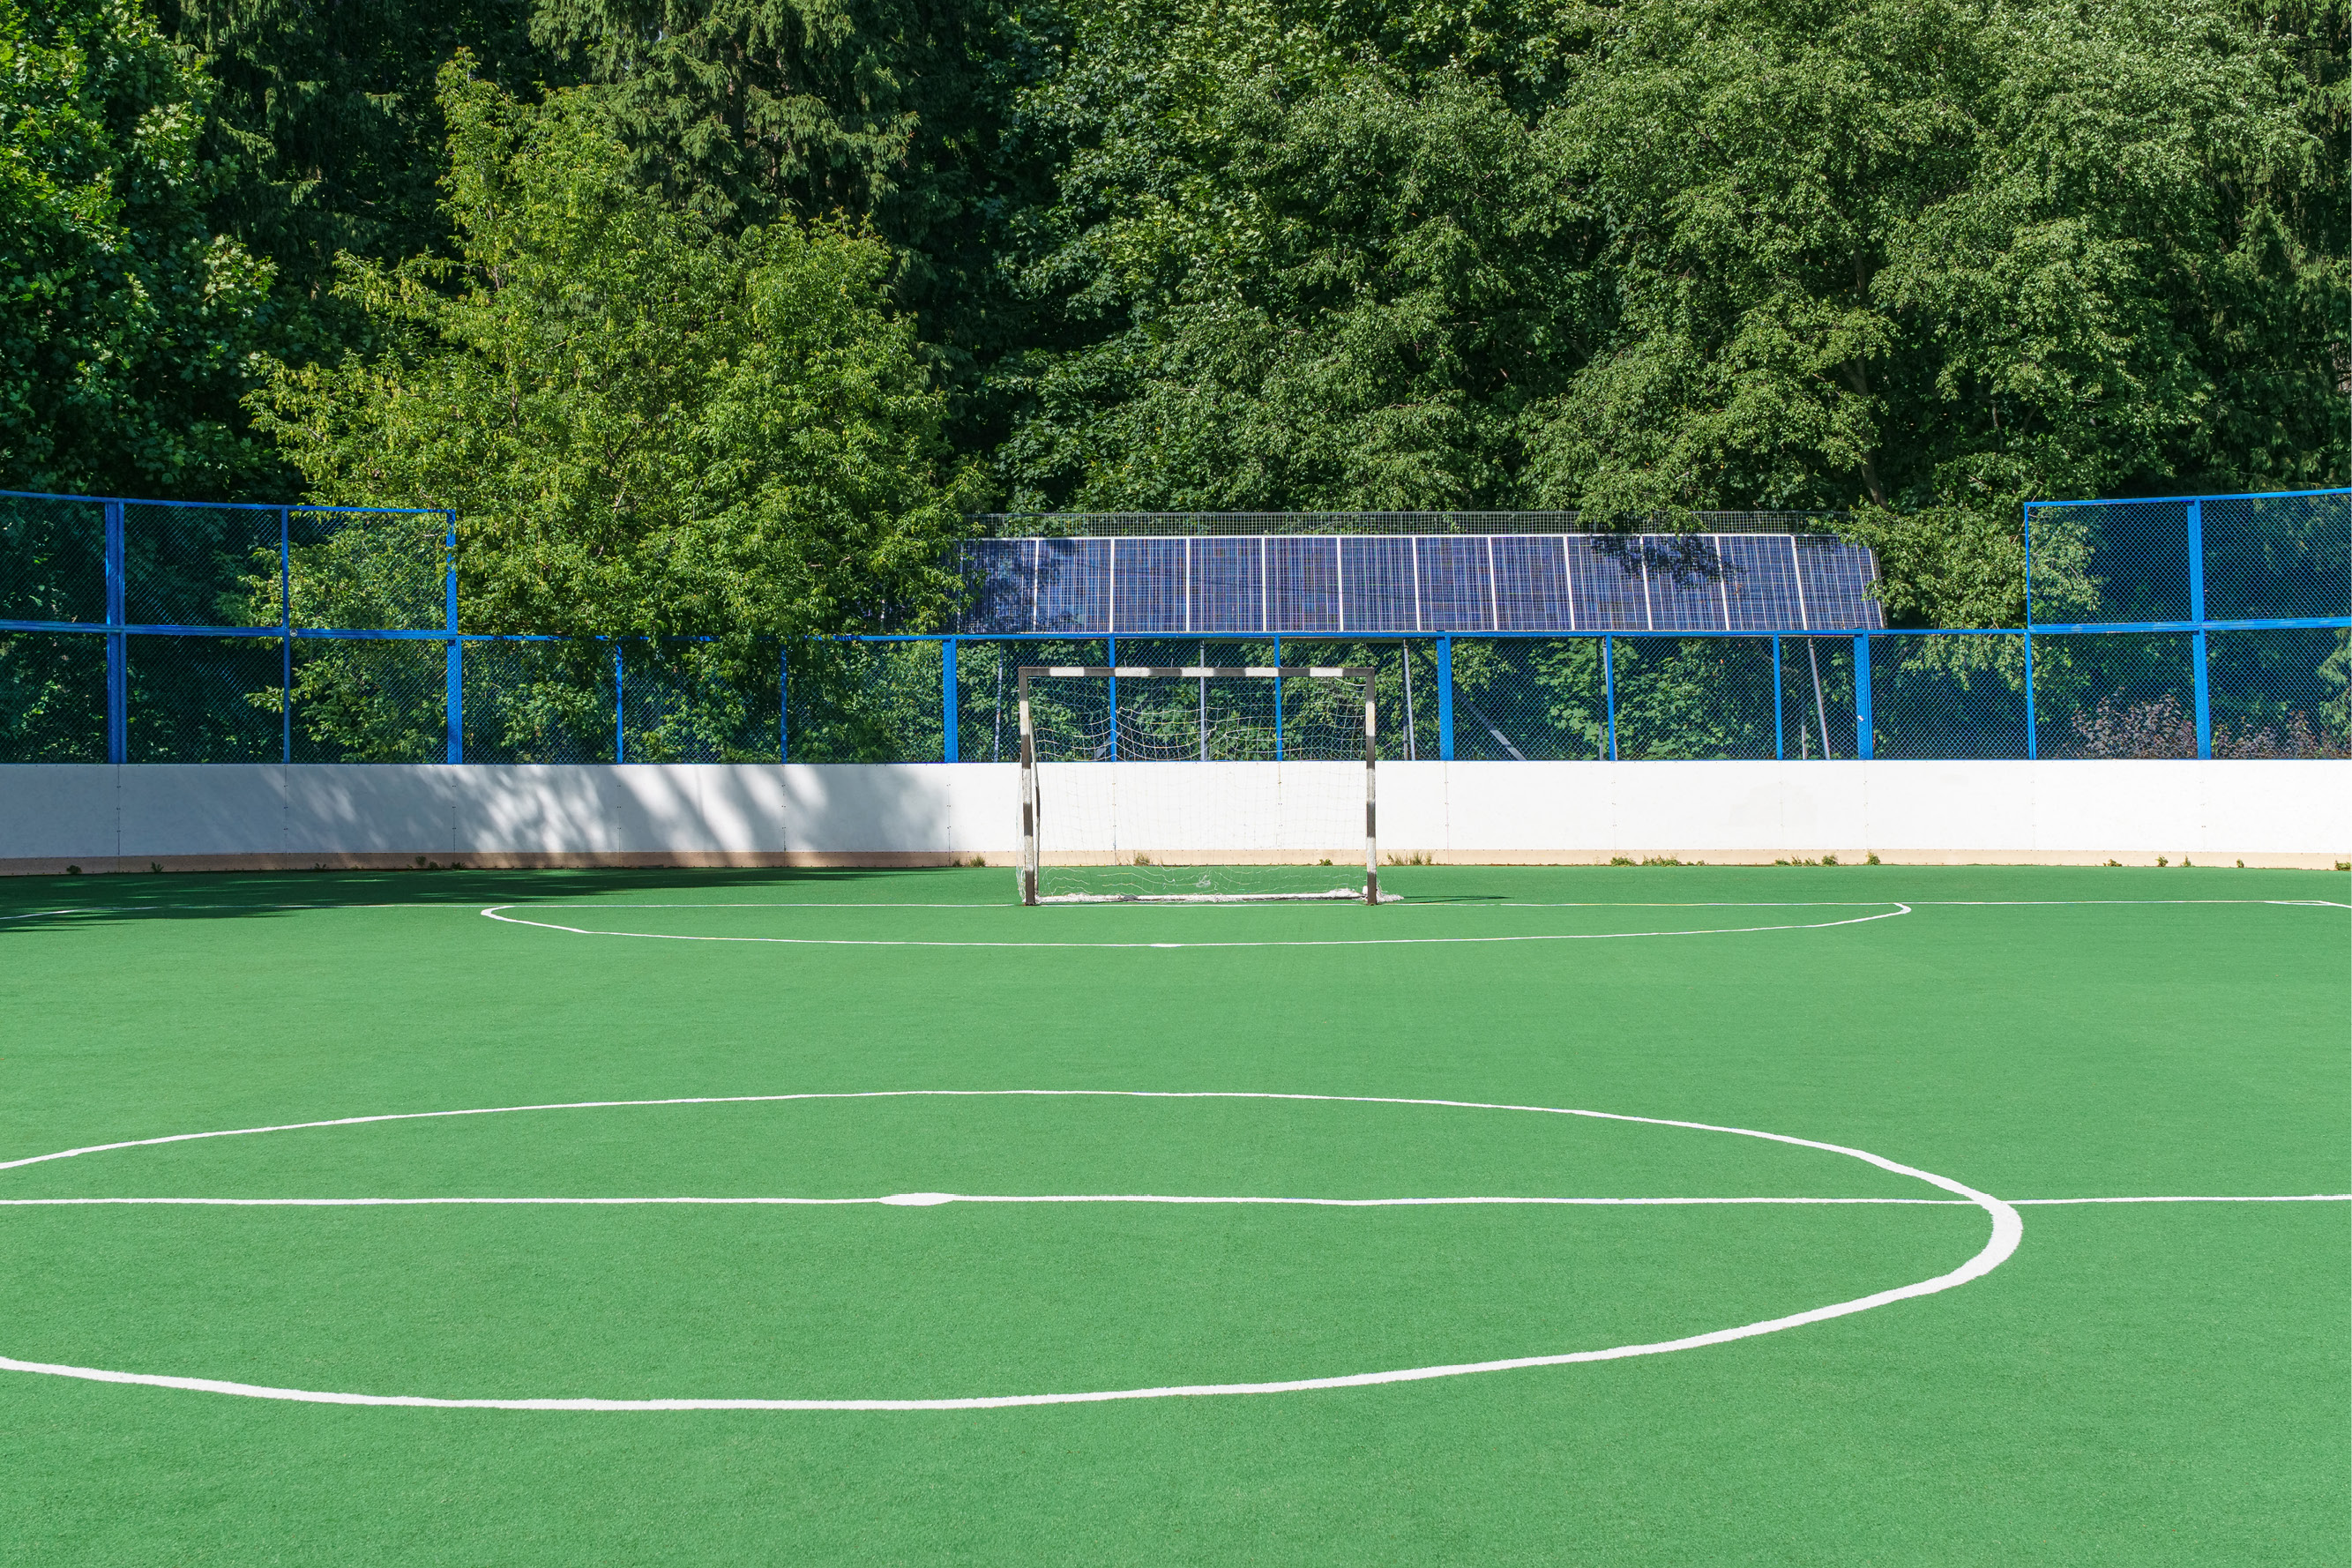 Campo de futebol salão com painéis solares.